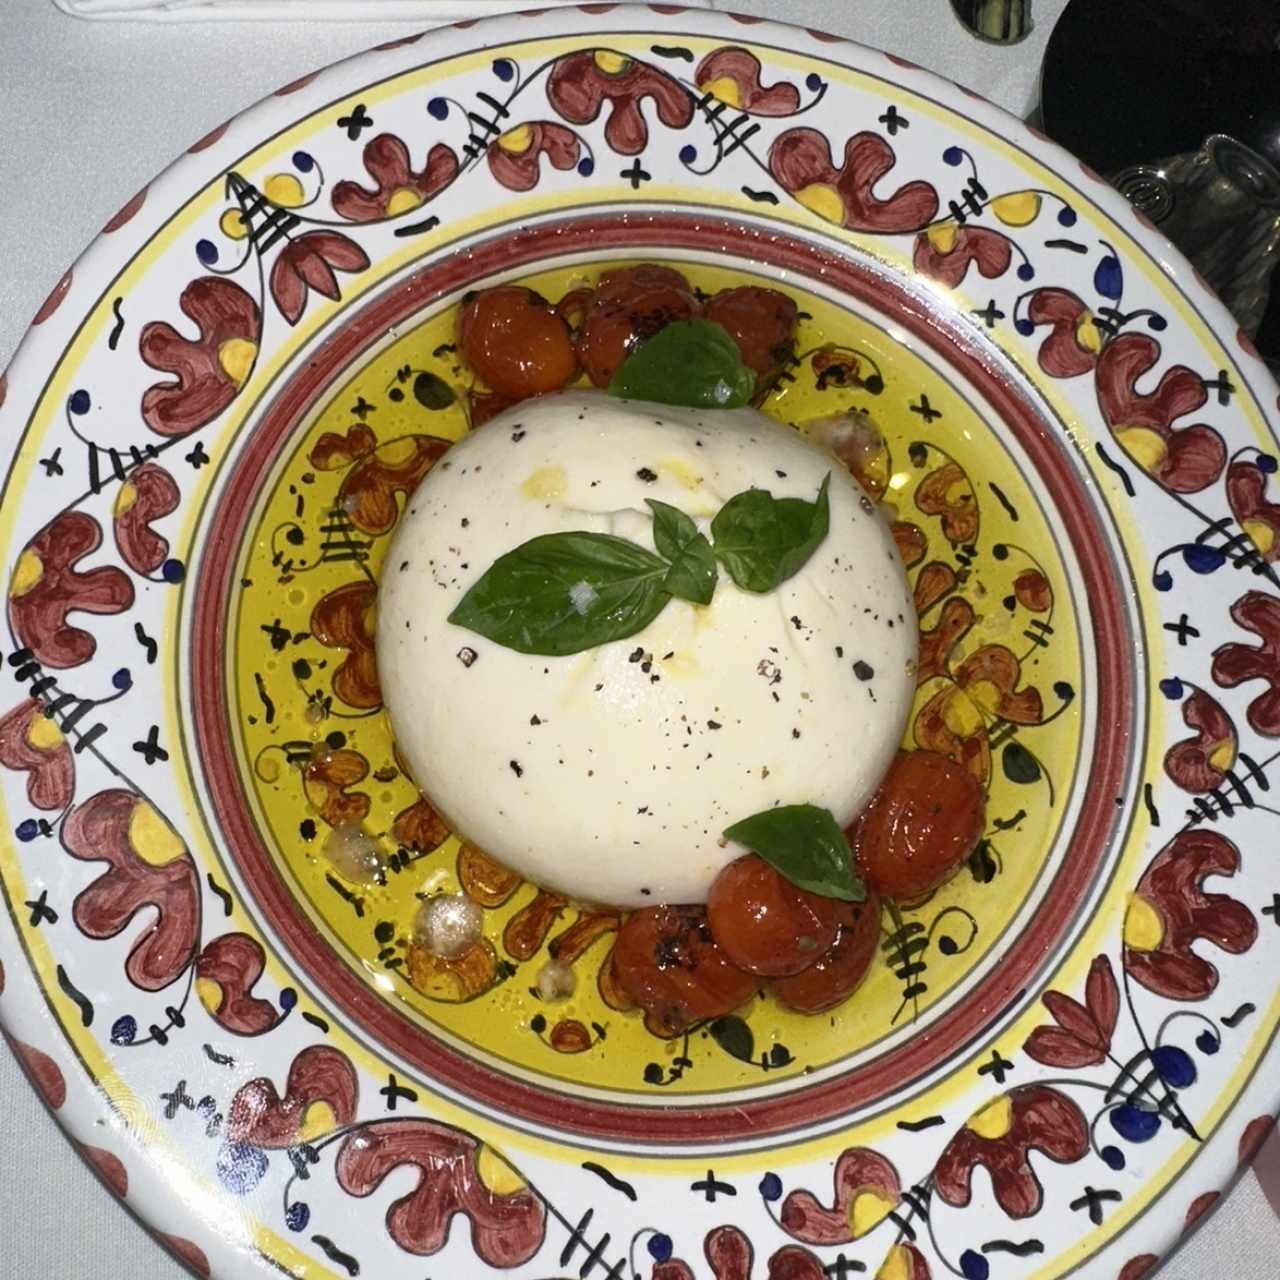 Burrata di Puglia DOP (200grs)